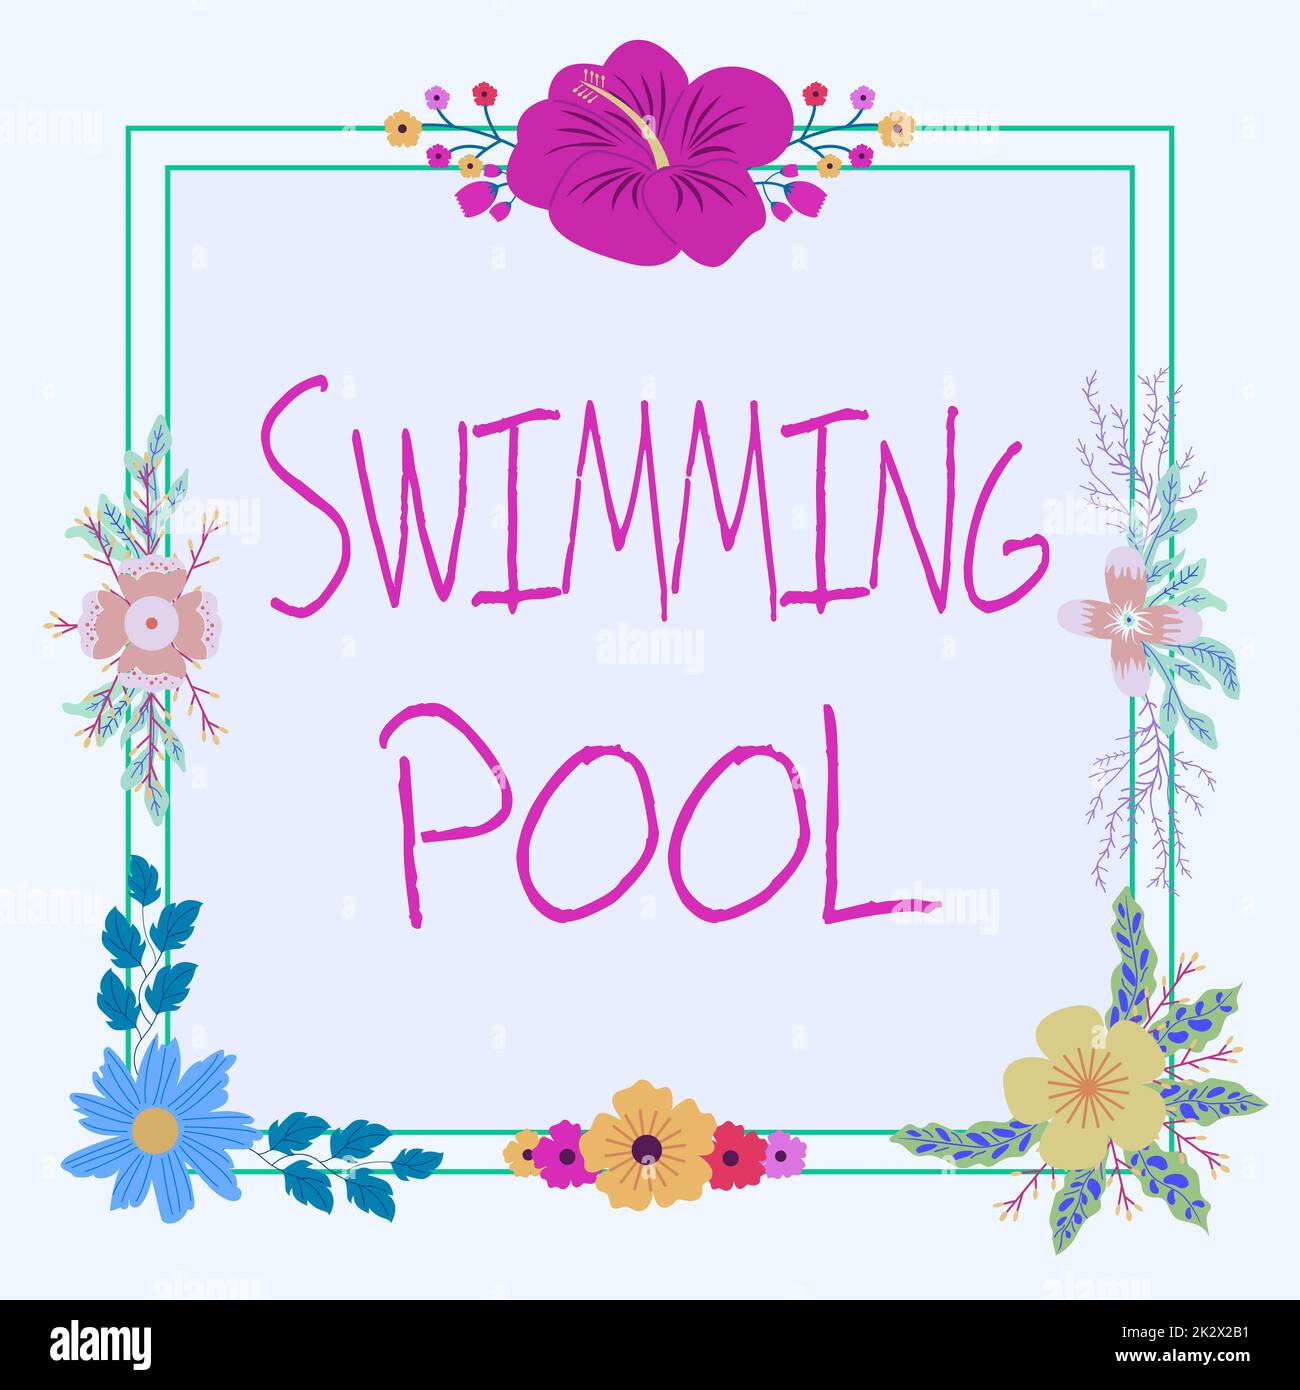 Inspiration mit Schild Swimming Pool. Business-Konzept-Struktur, die Wasser für Freizeitaktivitäten hält Rahmen mit farbenfrohen Blumen und Laub harmonisch angeordnet. Stockfoto